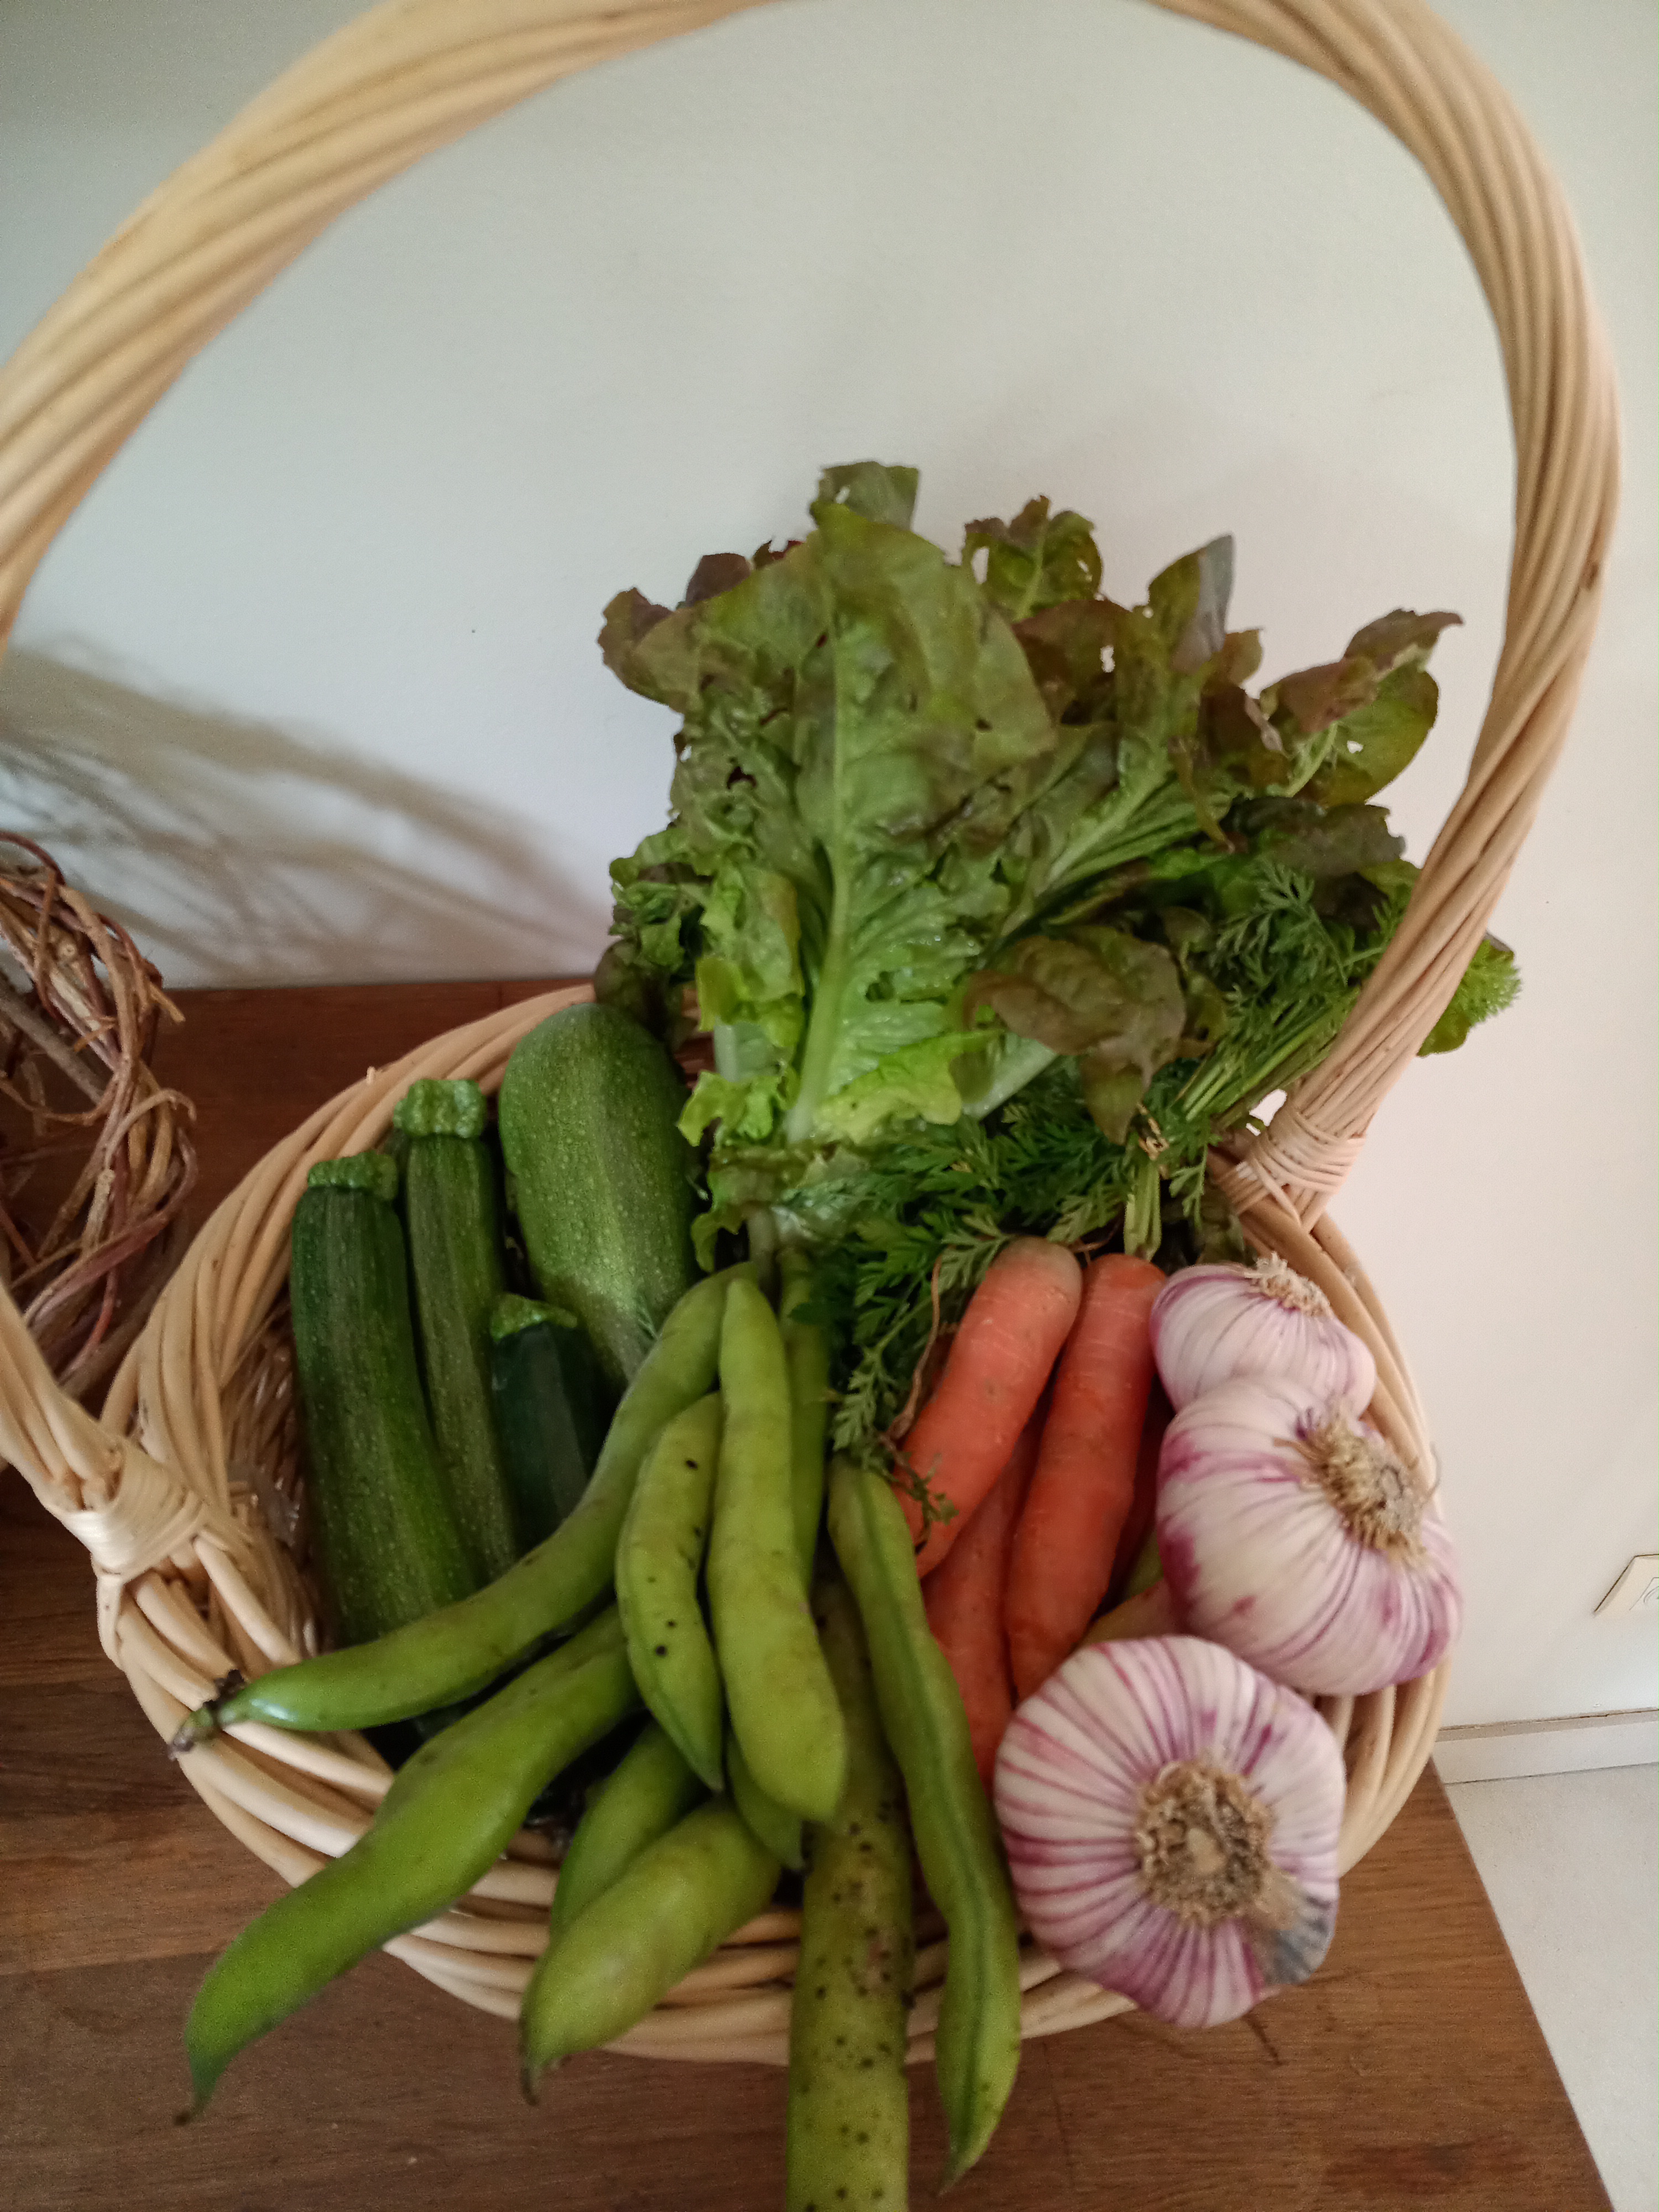 Panier de légumes de "La ferme d'à côté" - Lescar (64)